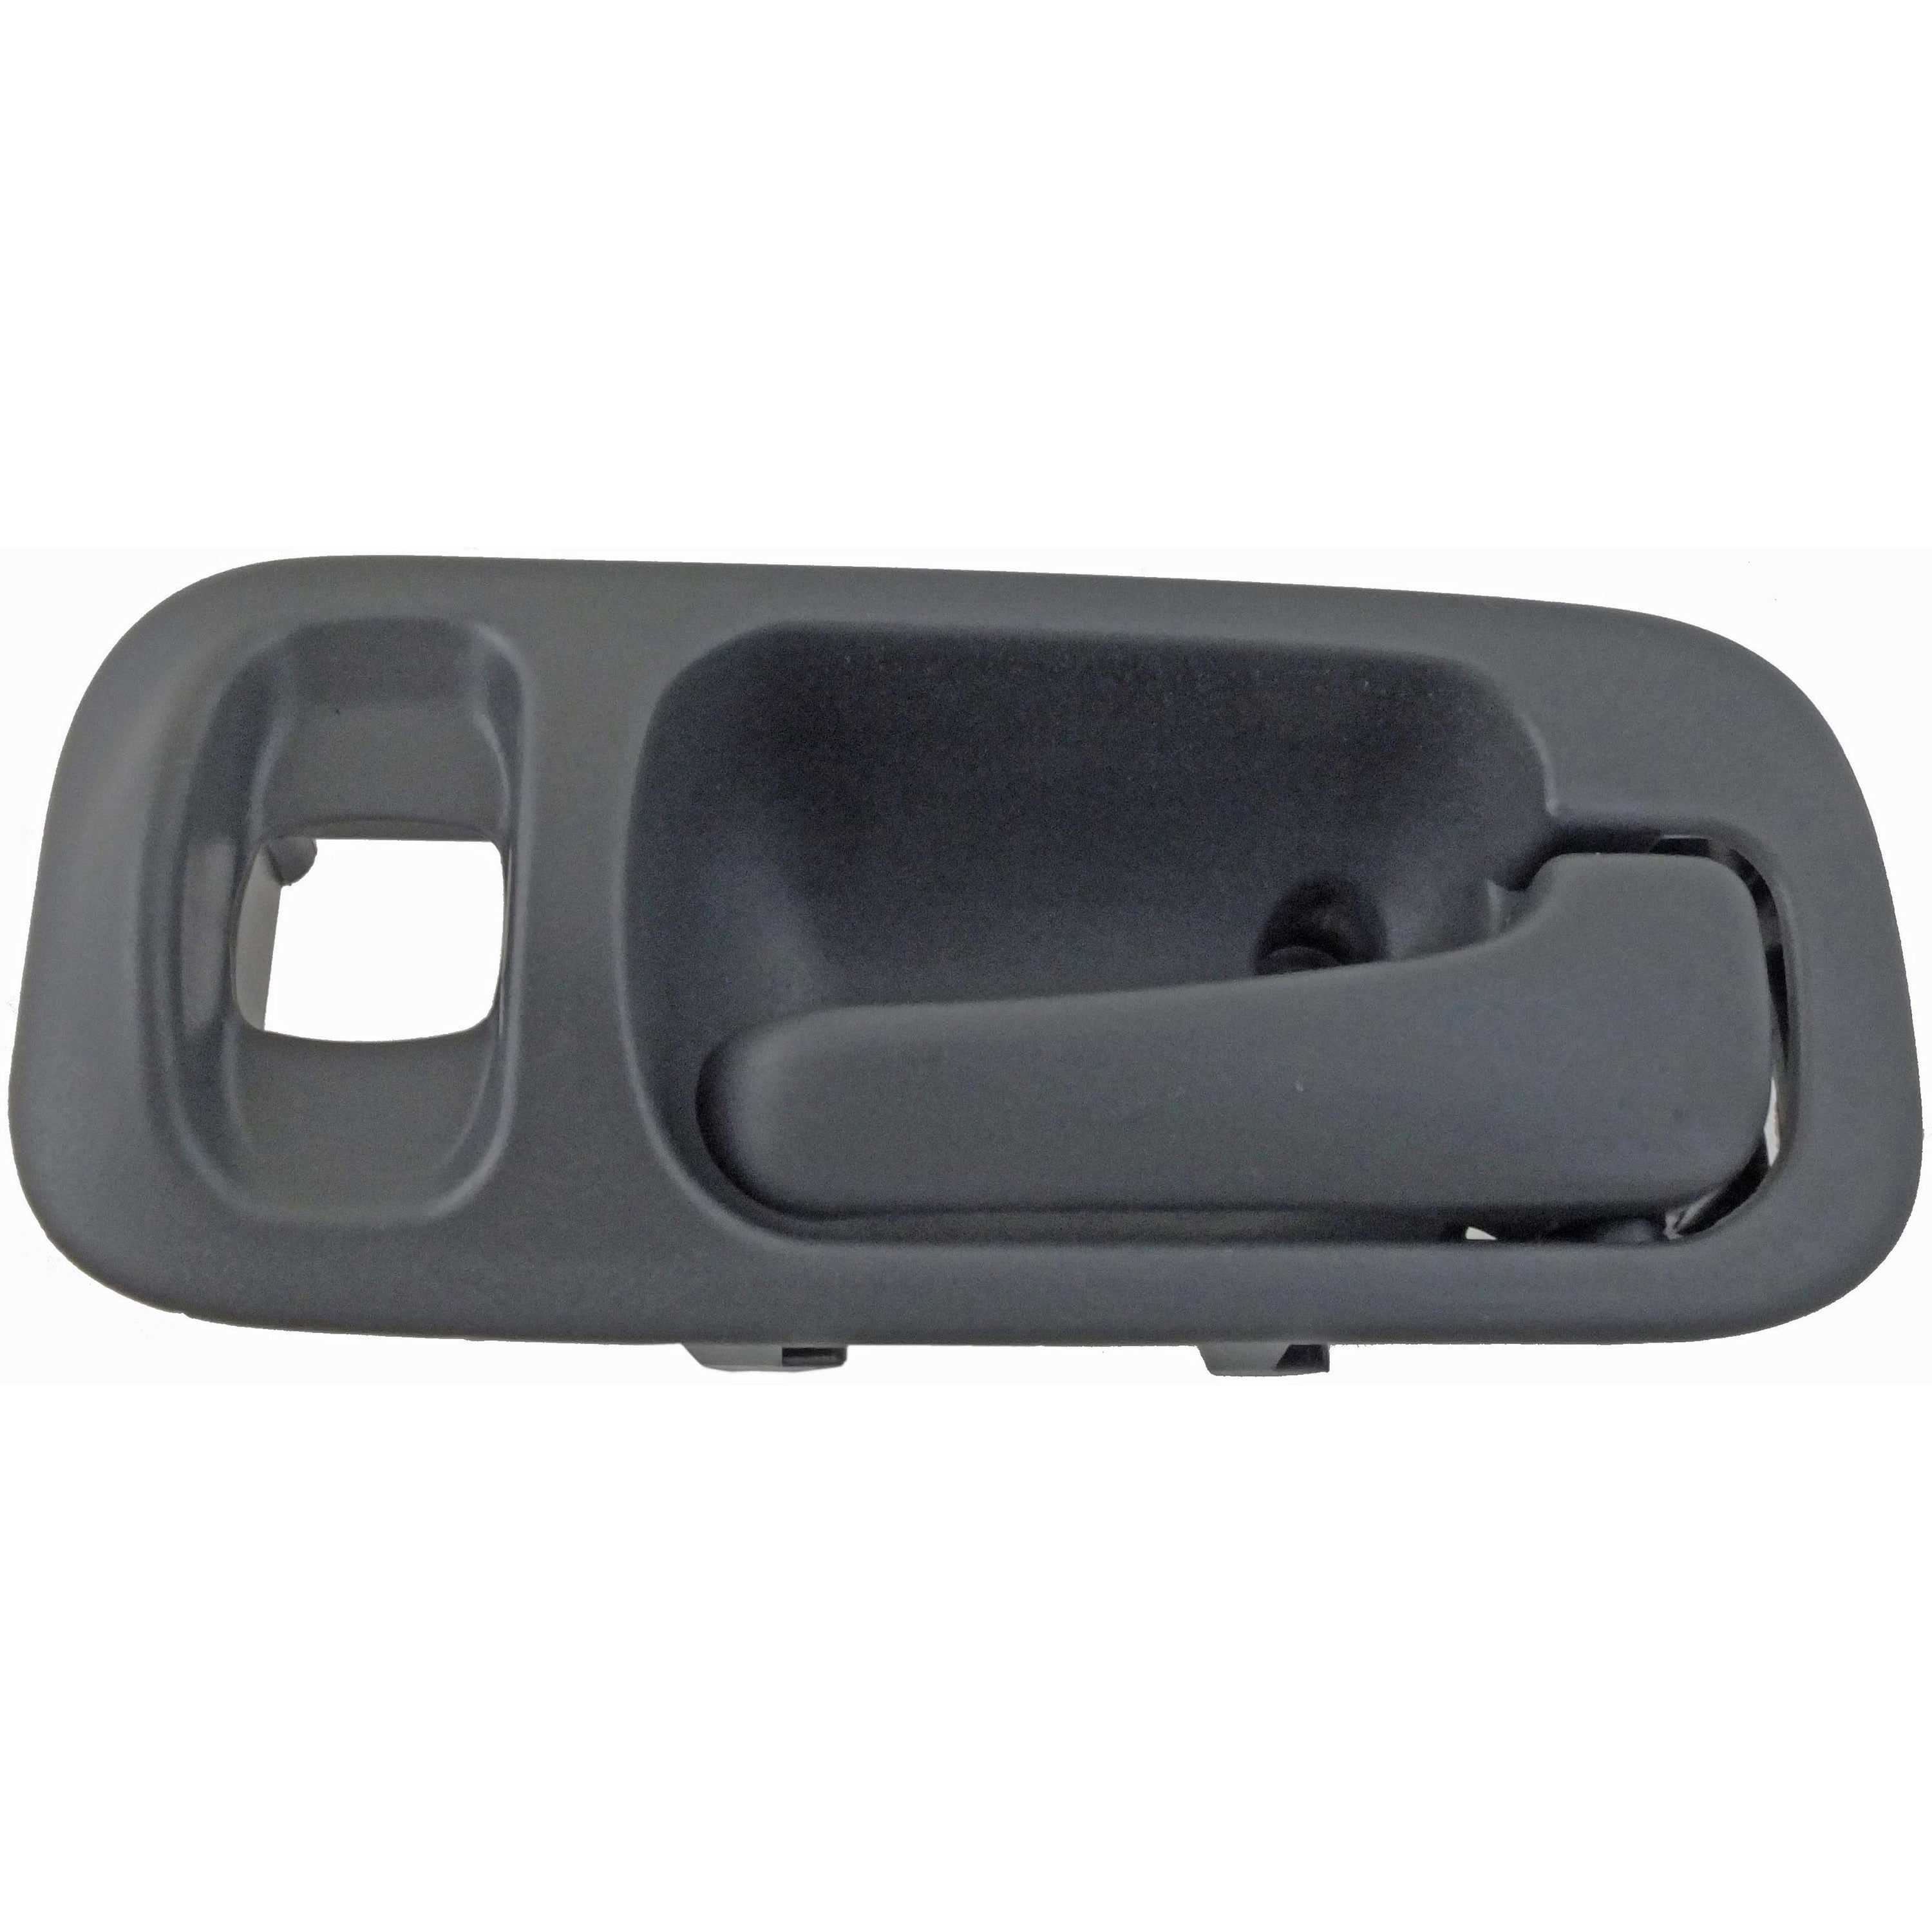 Dorman 92769 Rear Right Interior Door Handle for Specific Honda Models,  Gray Clip 